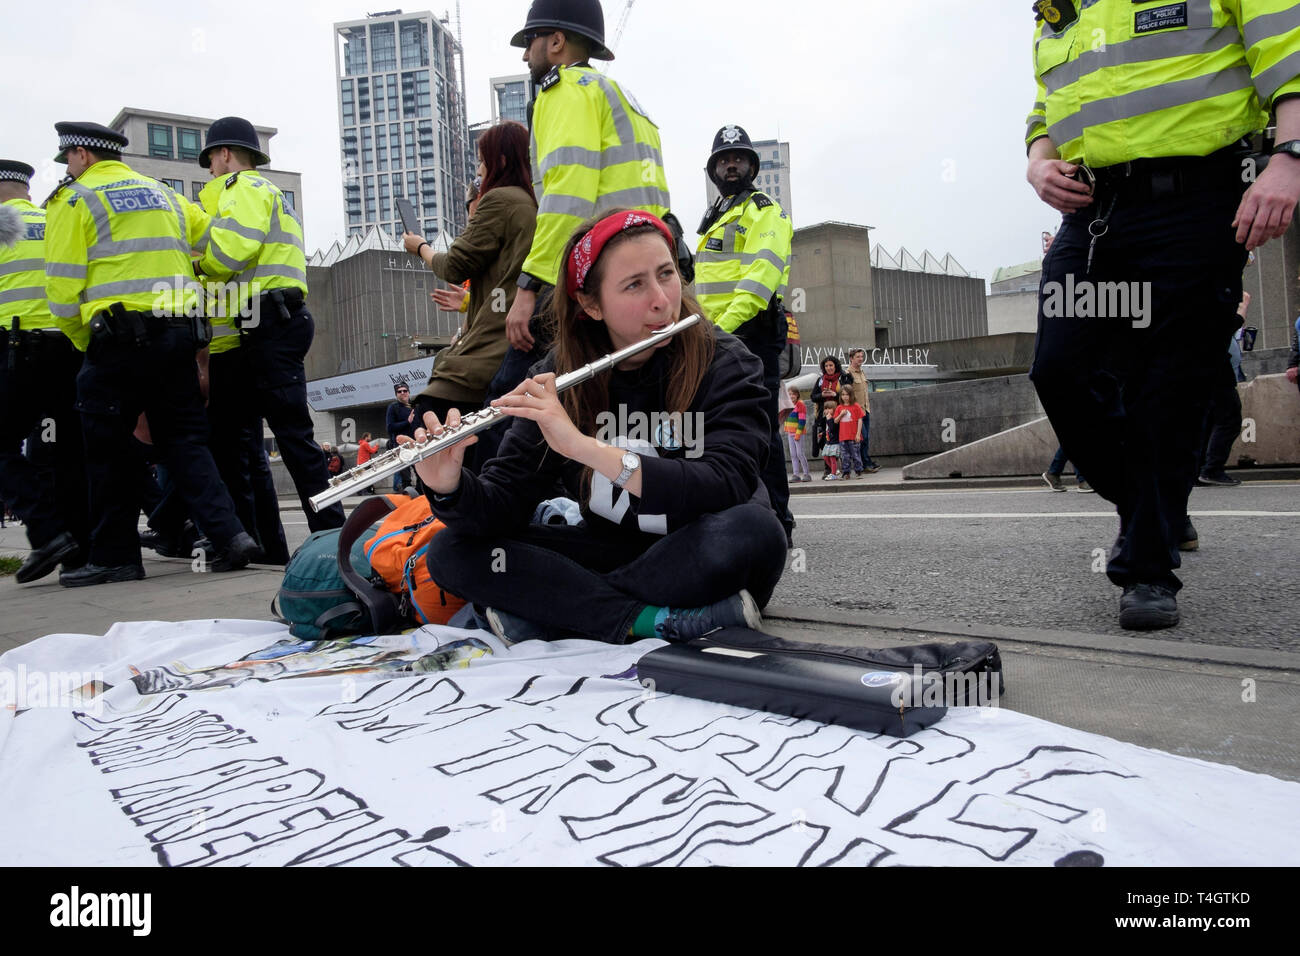 Extinction les militants de la rébellion occupent le Waterloo Bridge, Londres, avril 2019 : un jeune flûtiste joue alors que la police prend des mesures contre les manifestants. Banque D'Images